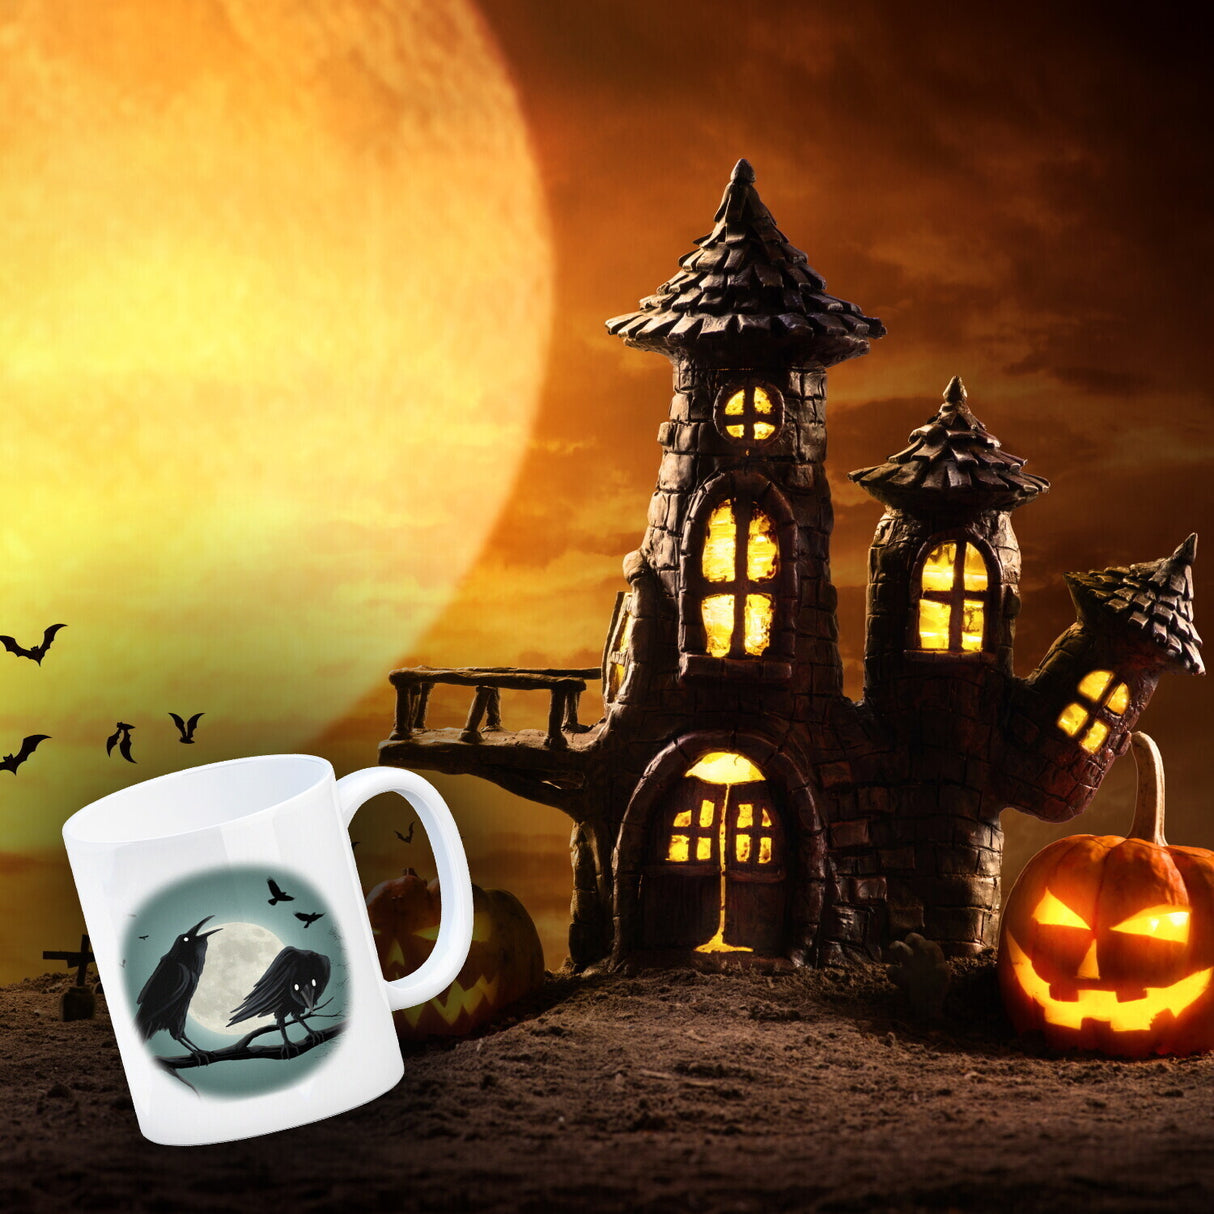 Kaffeetasse mit gruseligem Rabe Motiv und Spruch - Happy Halloween